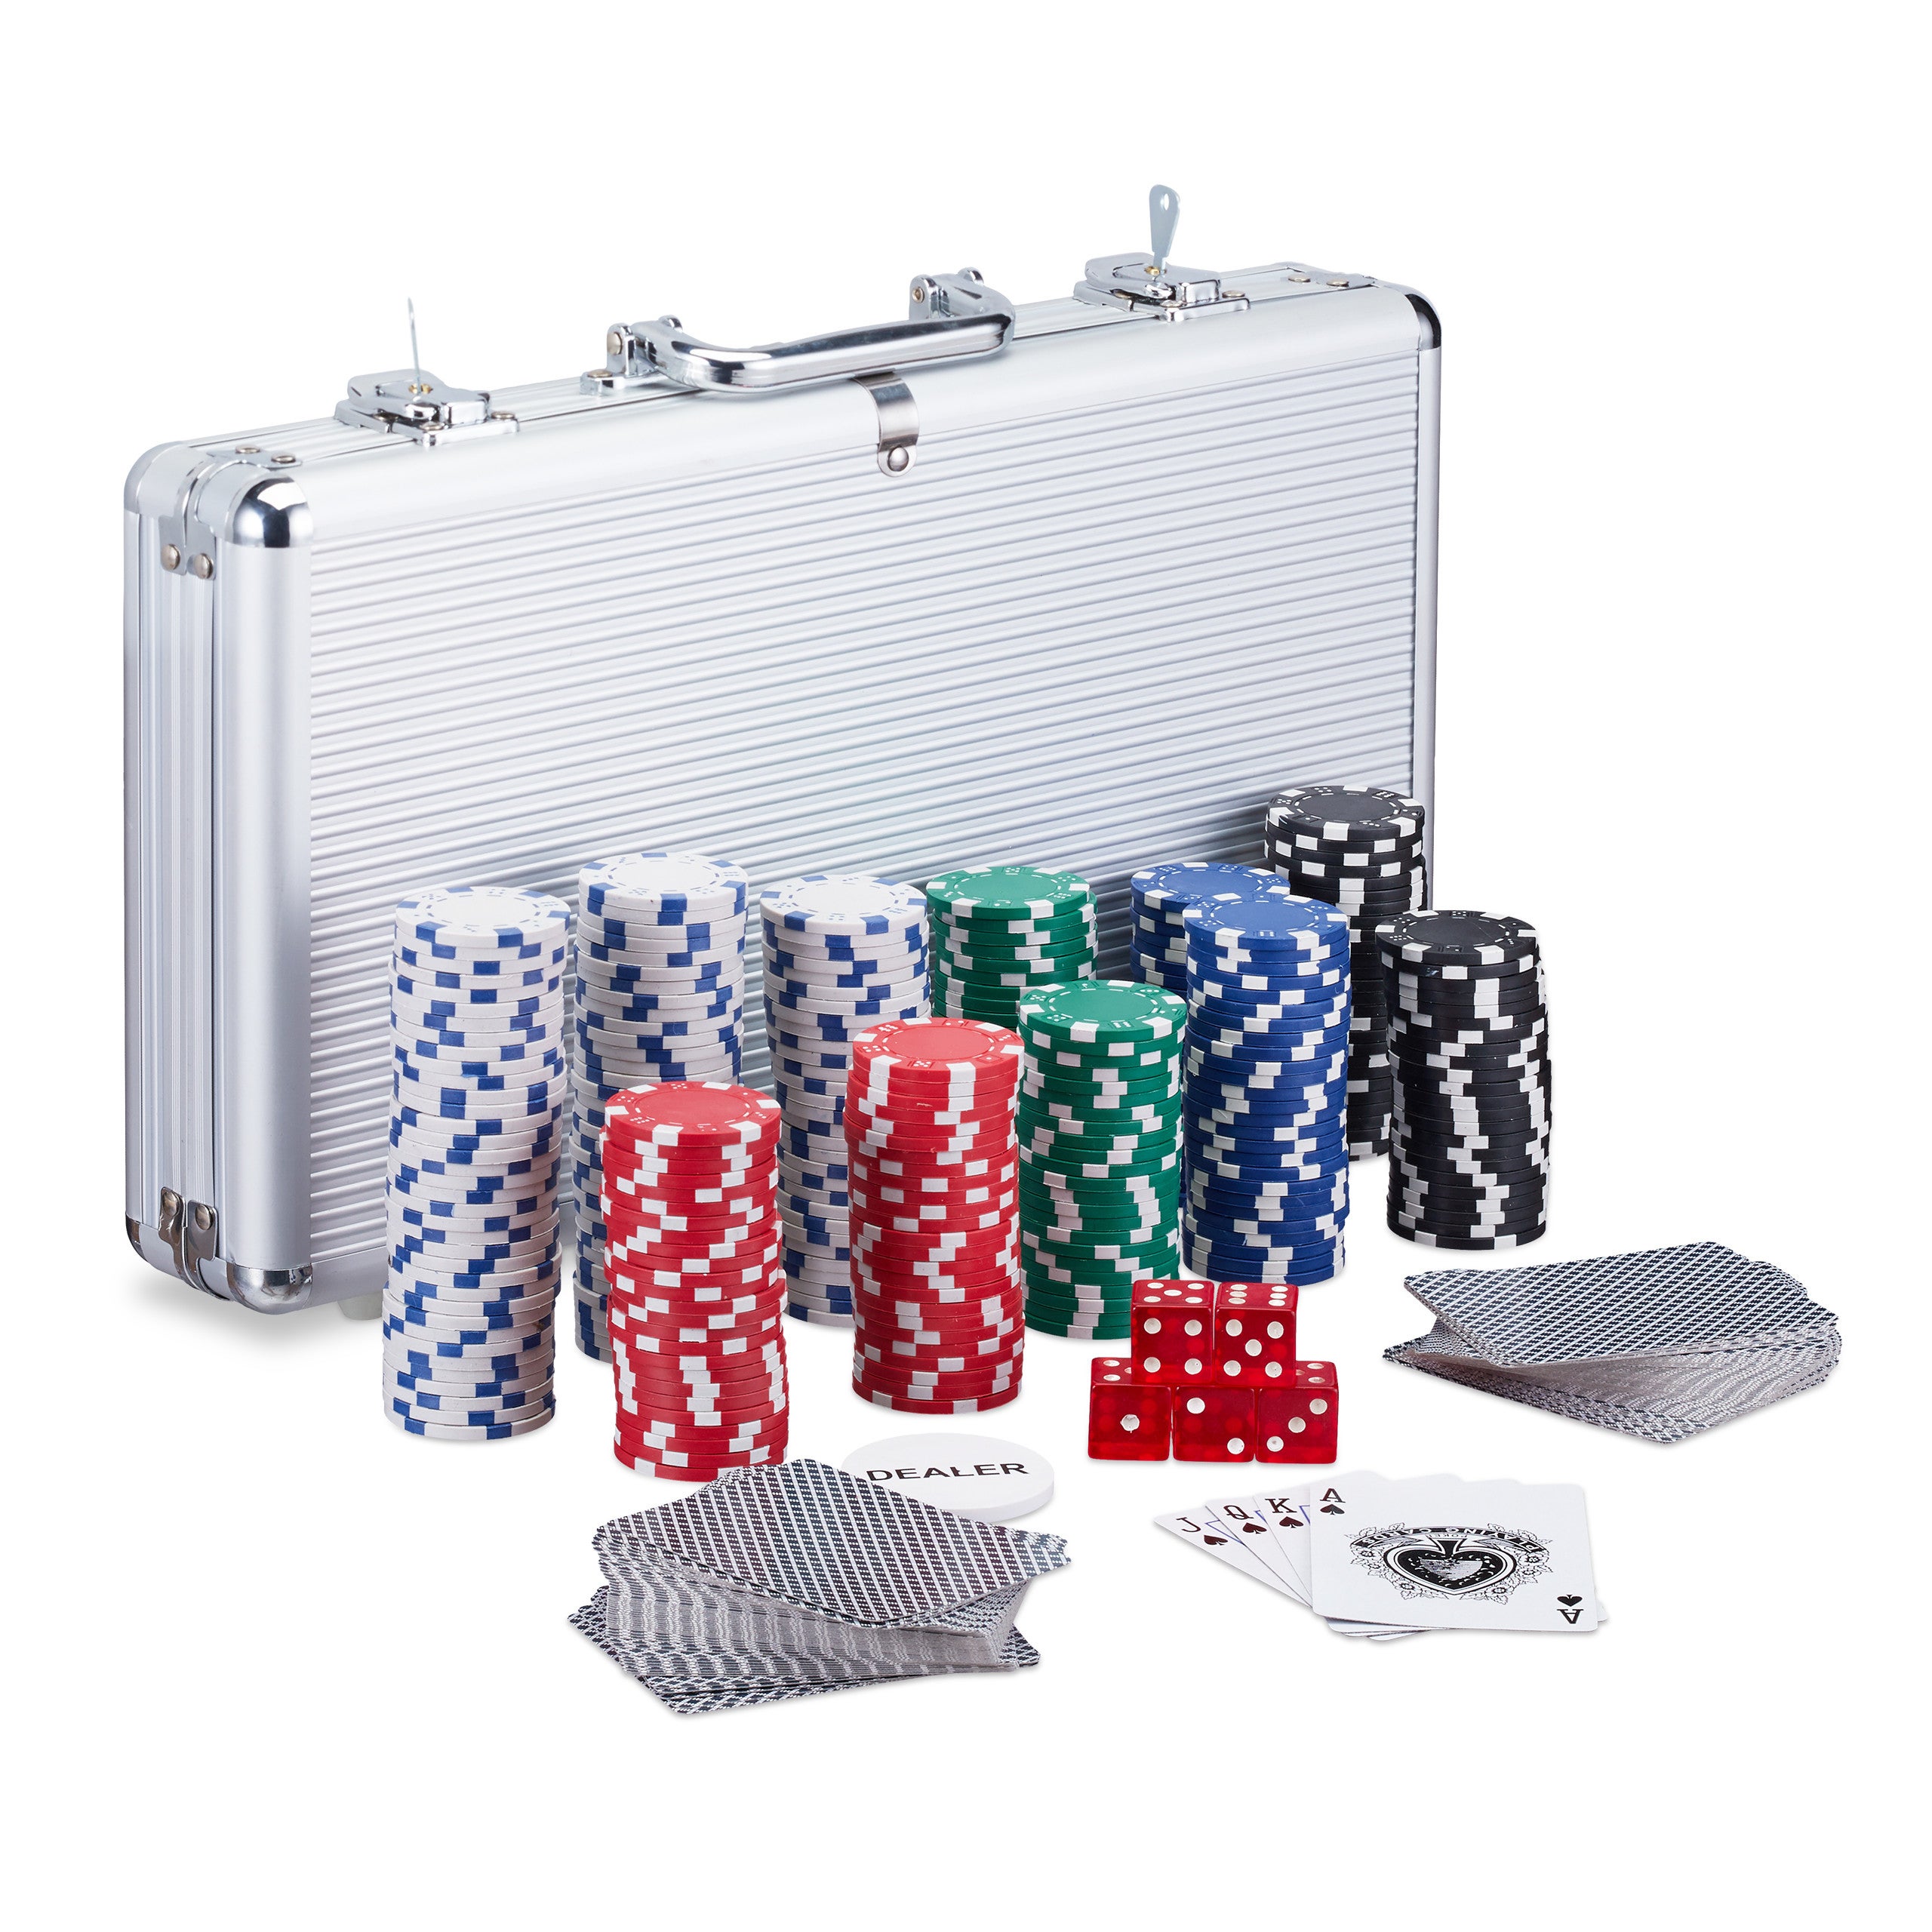 5 X dadi Alluminio 2 chiavi 1 X Dealer Button Argento Aufun Poker Set con chip laser di alta qualità Poker chip con 2 X Pokerdecks 